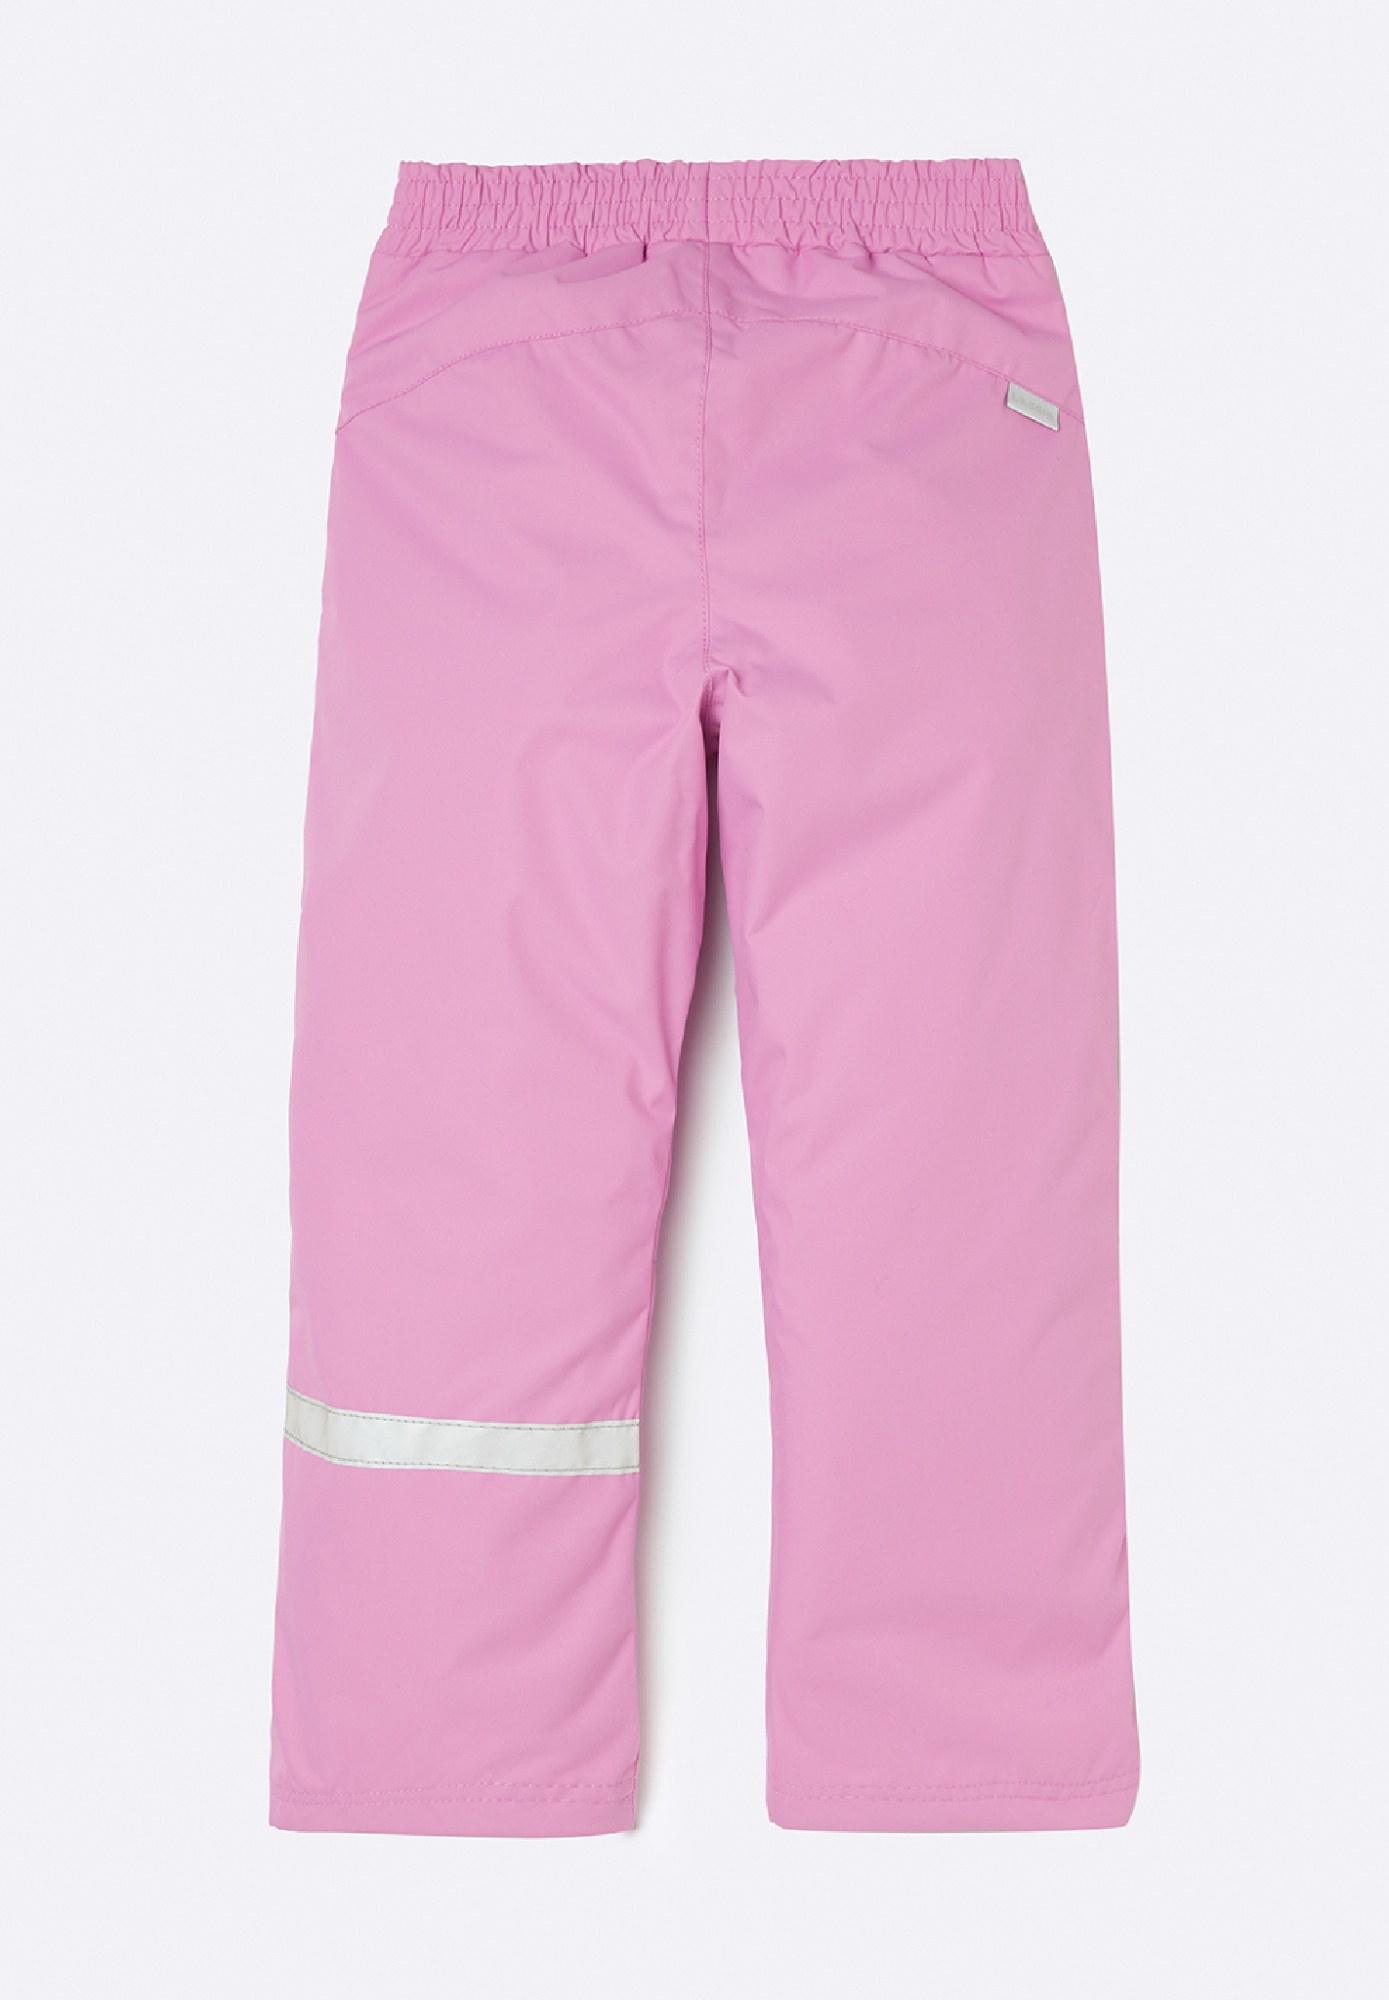 Детские брюки Lassie Terje Розовые | фото